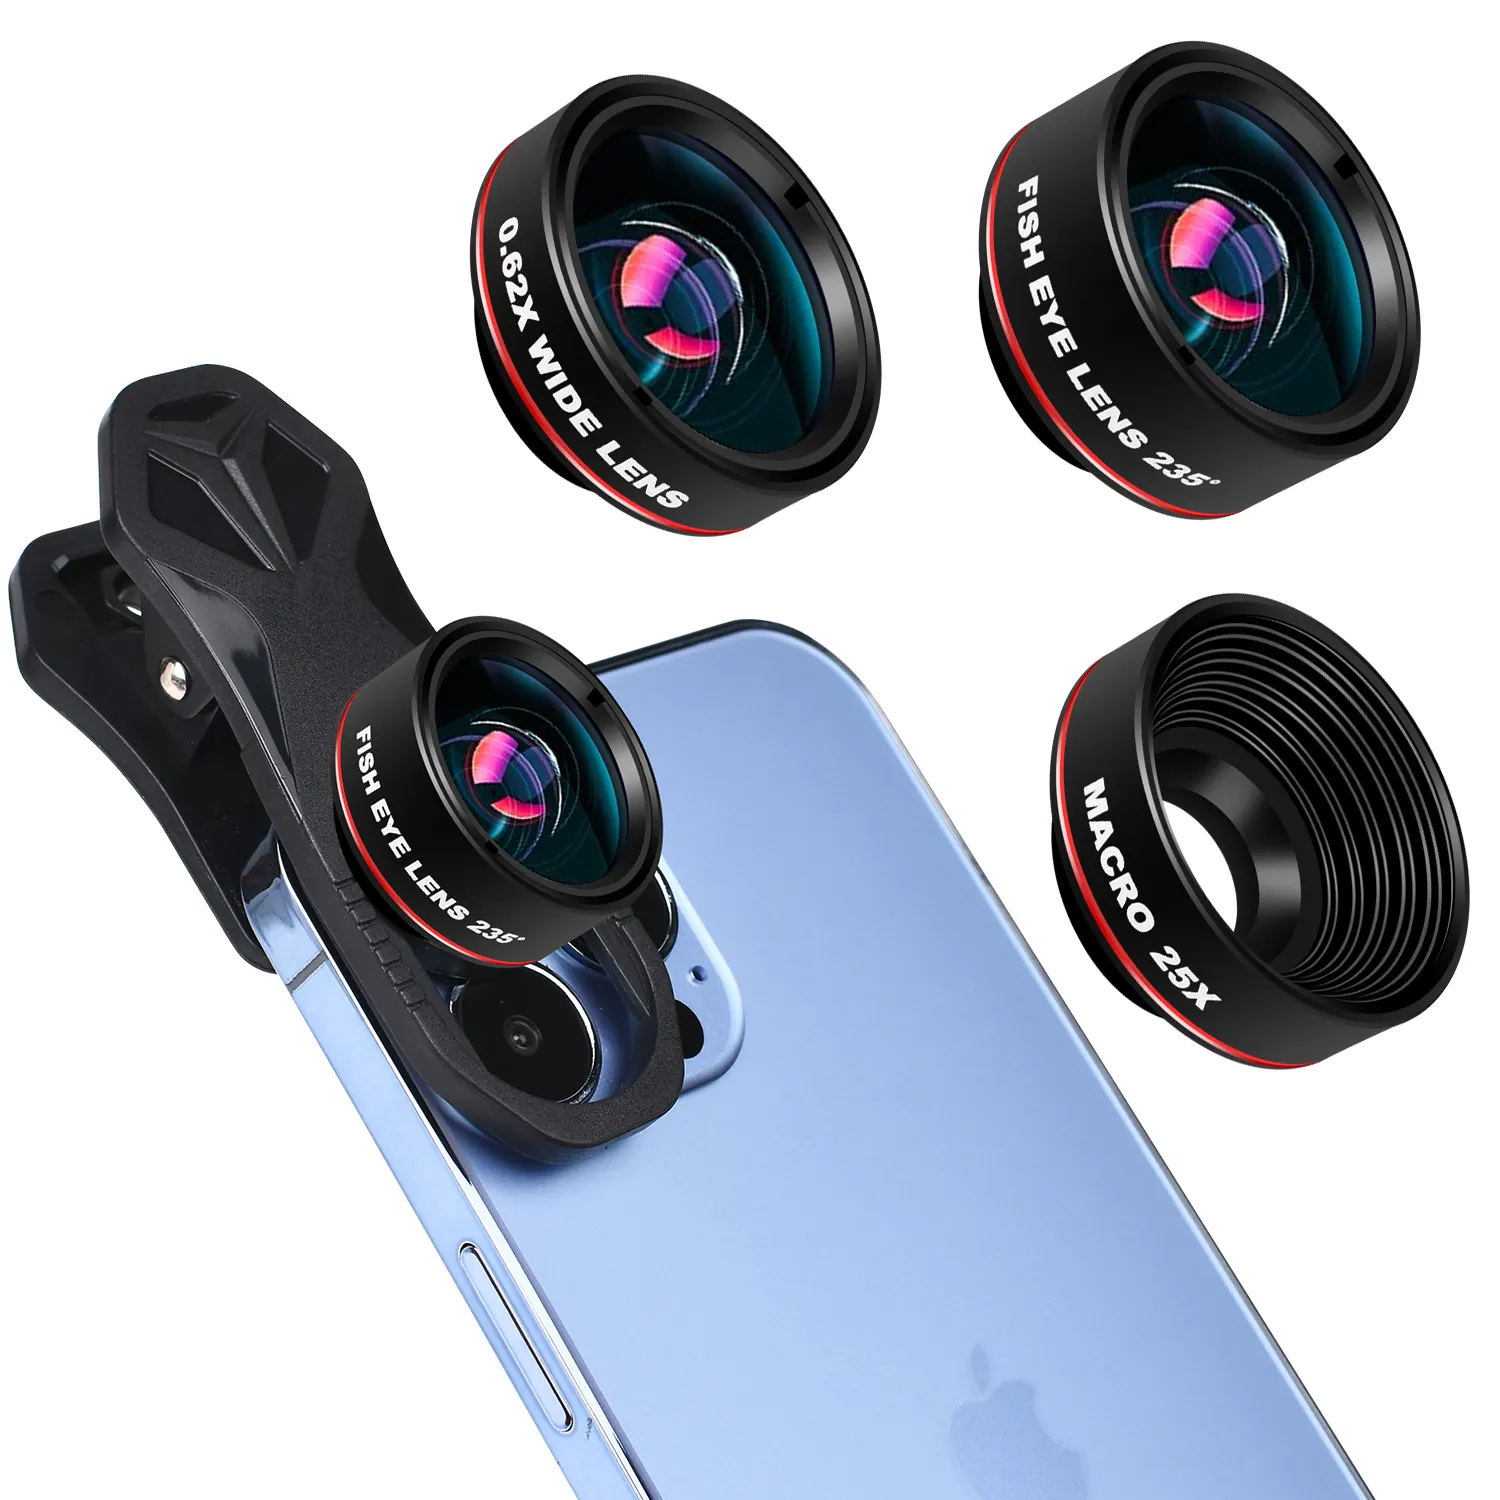 Kit obiettivo per fotocamera mobile 3-in-1, 198 fisheye + 120 macro super grandangolare + 20x, per smartphone iPhone, Samsung e Android